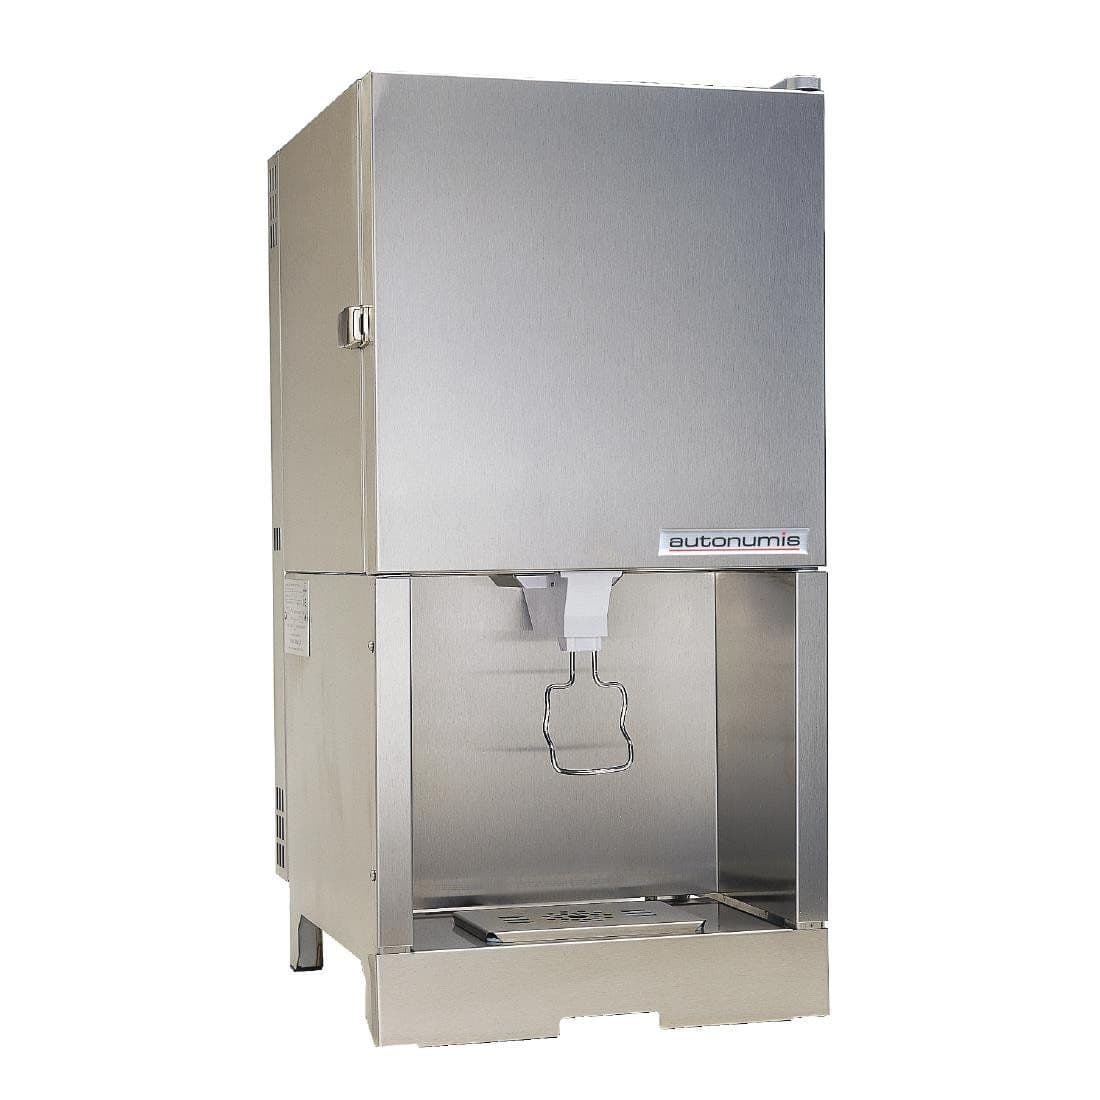 Autonumis Milk Coola Bag In Box Milk Dispenser A10207 JD Catering Equipment Solutions Ltd